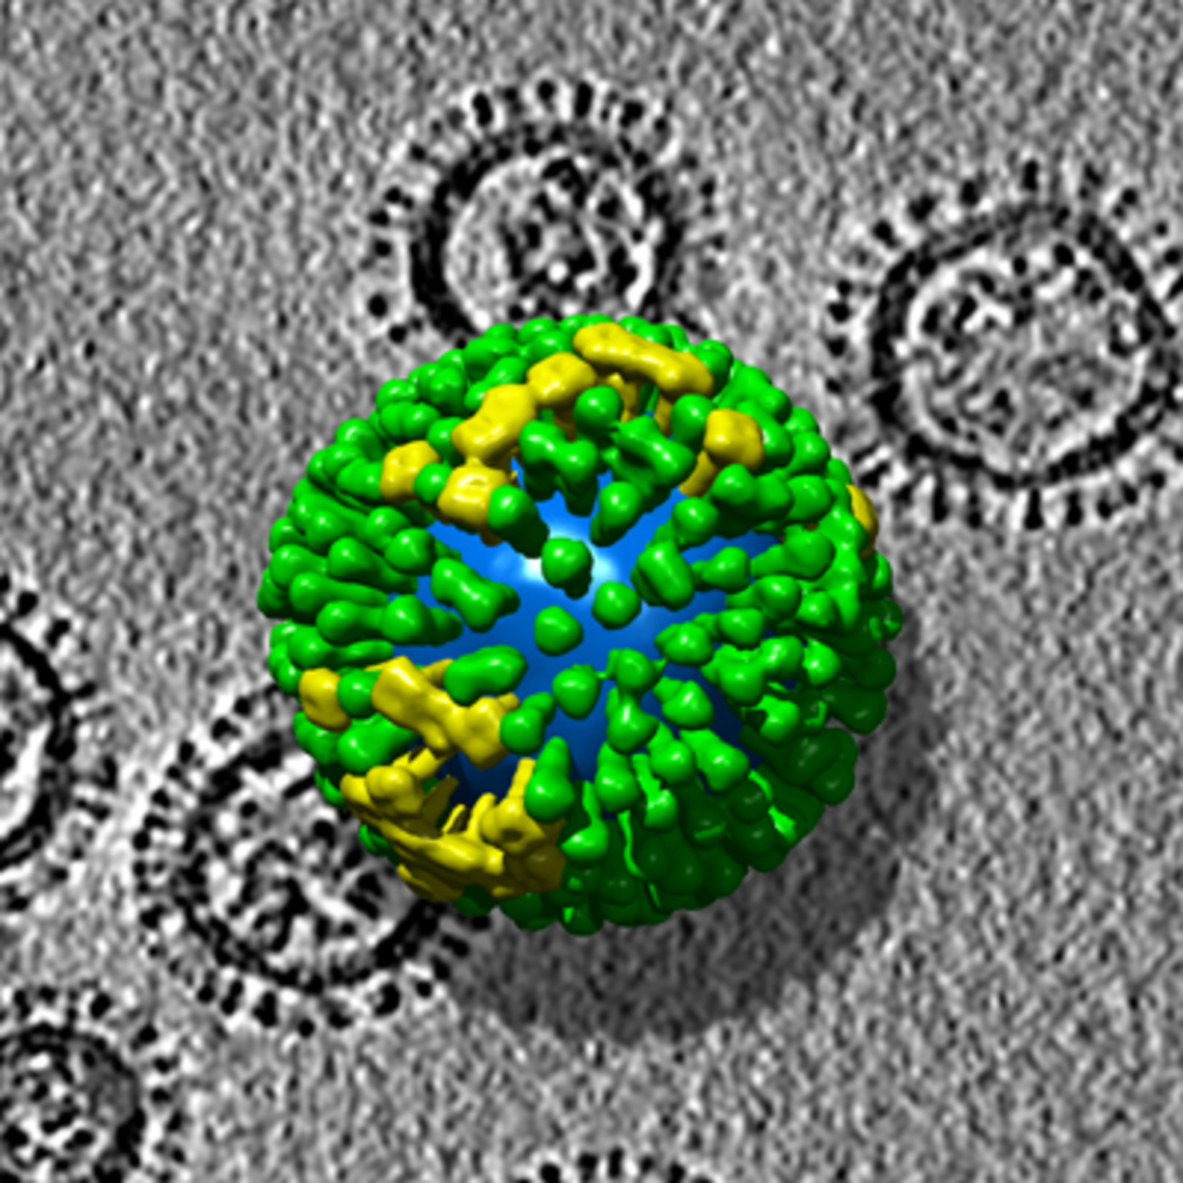 流感病毒在人体内的变异可预测病毒的全球蔓延趋势